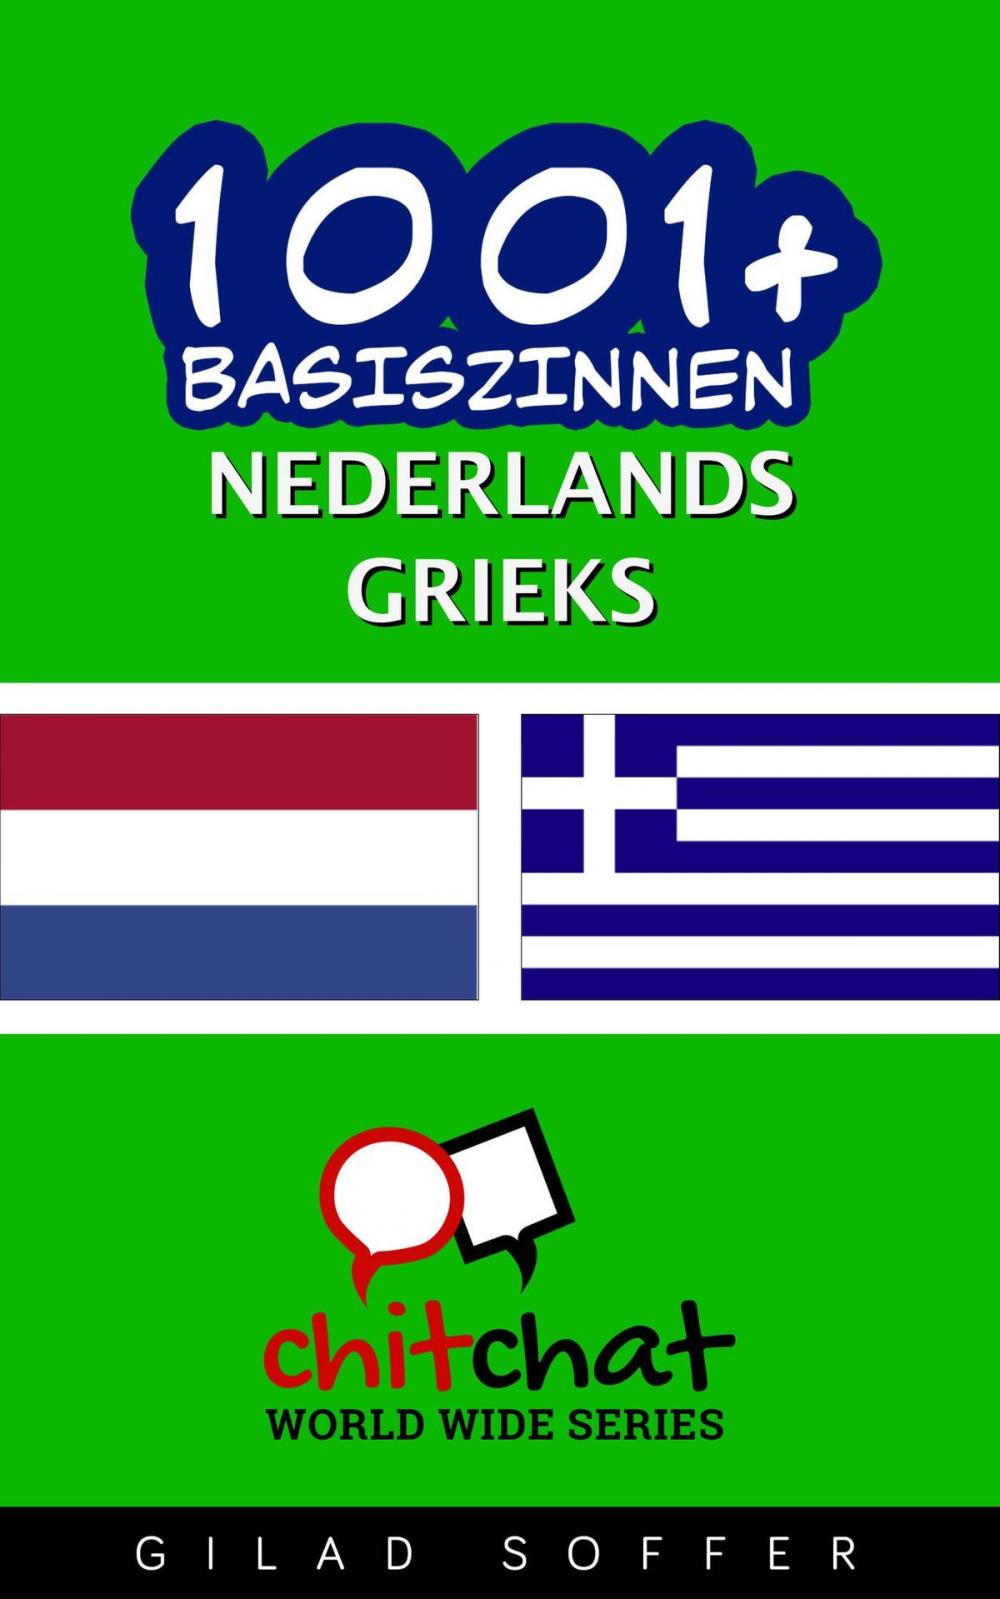 Big bigCover of 1001+ basiszinnen nederlands - Grieks